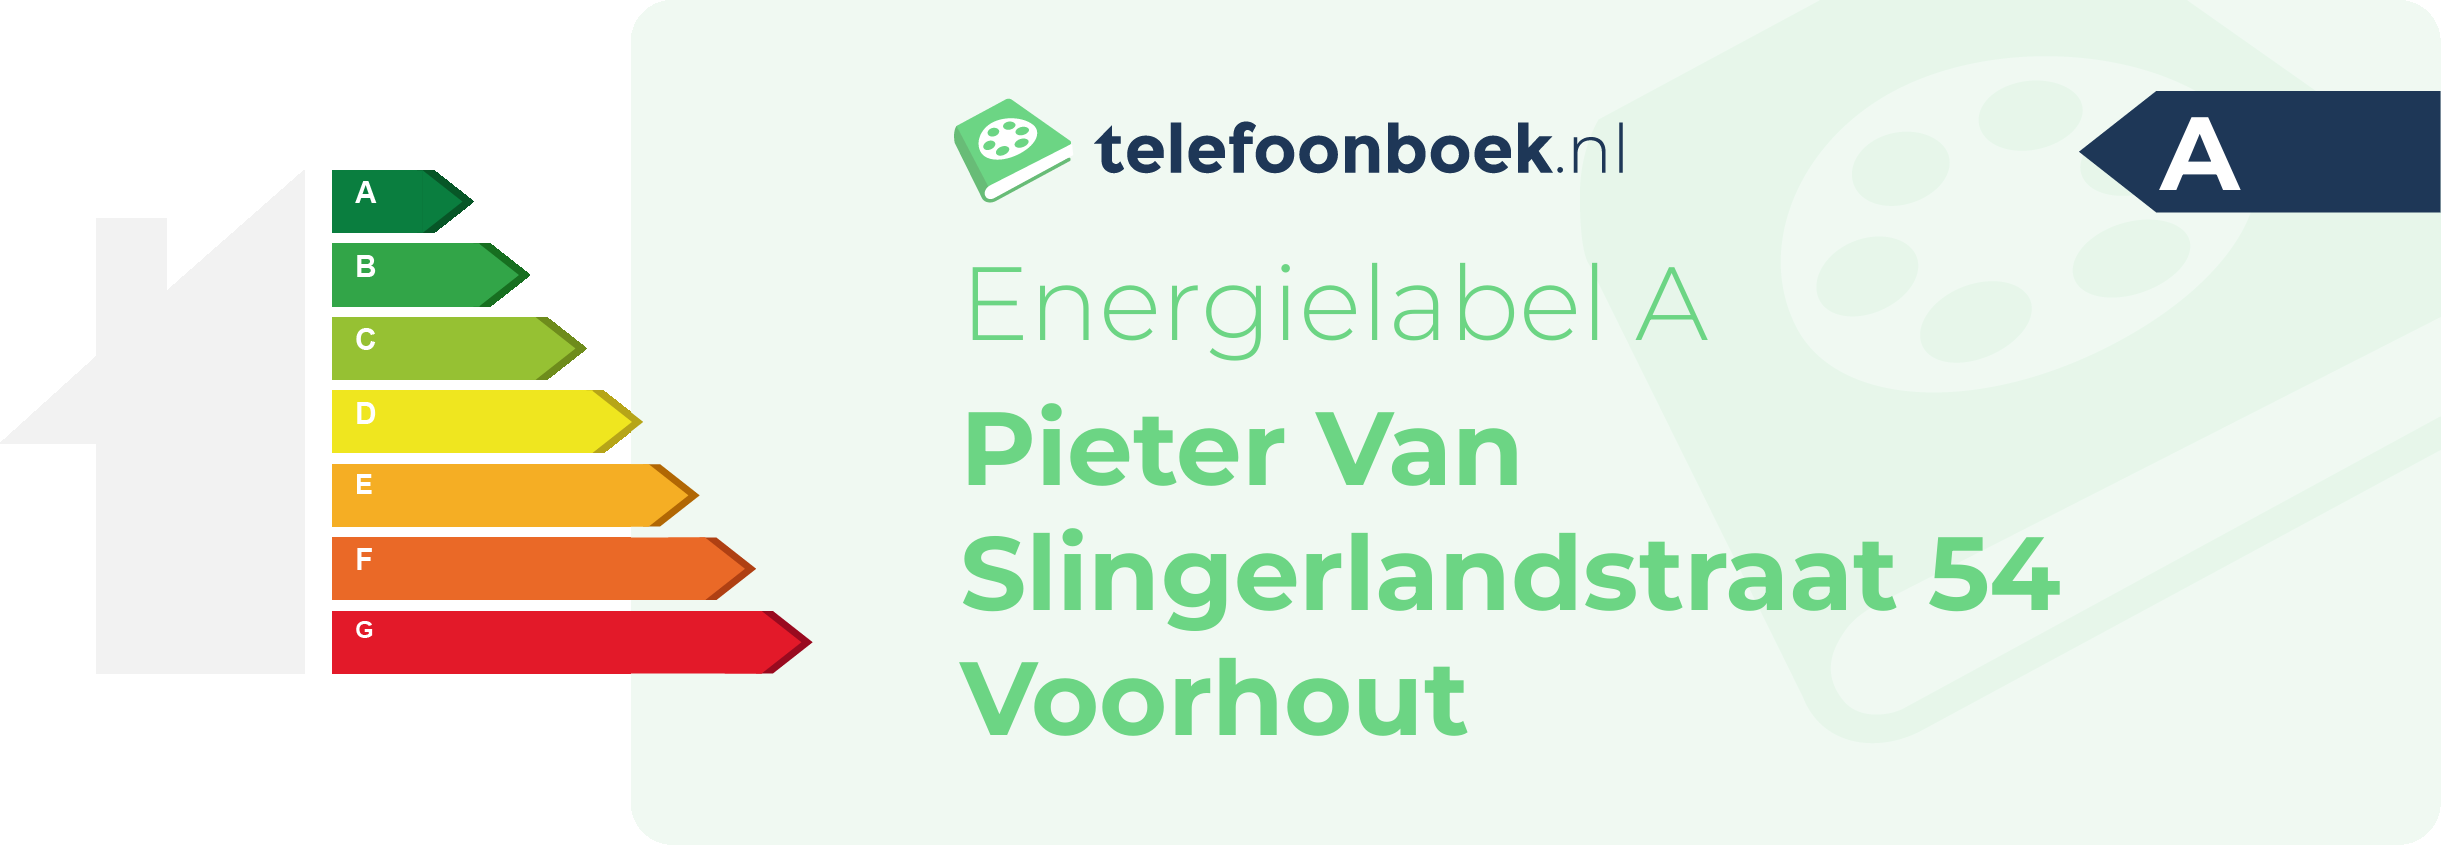 Energielabel Pieter Van Slingerlandstraat 54 Voorhout